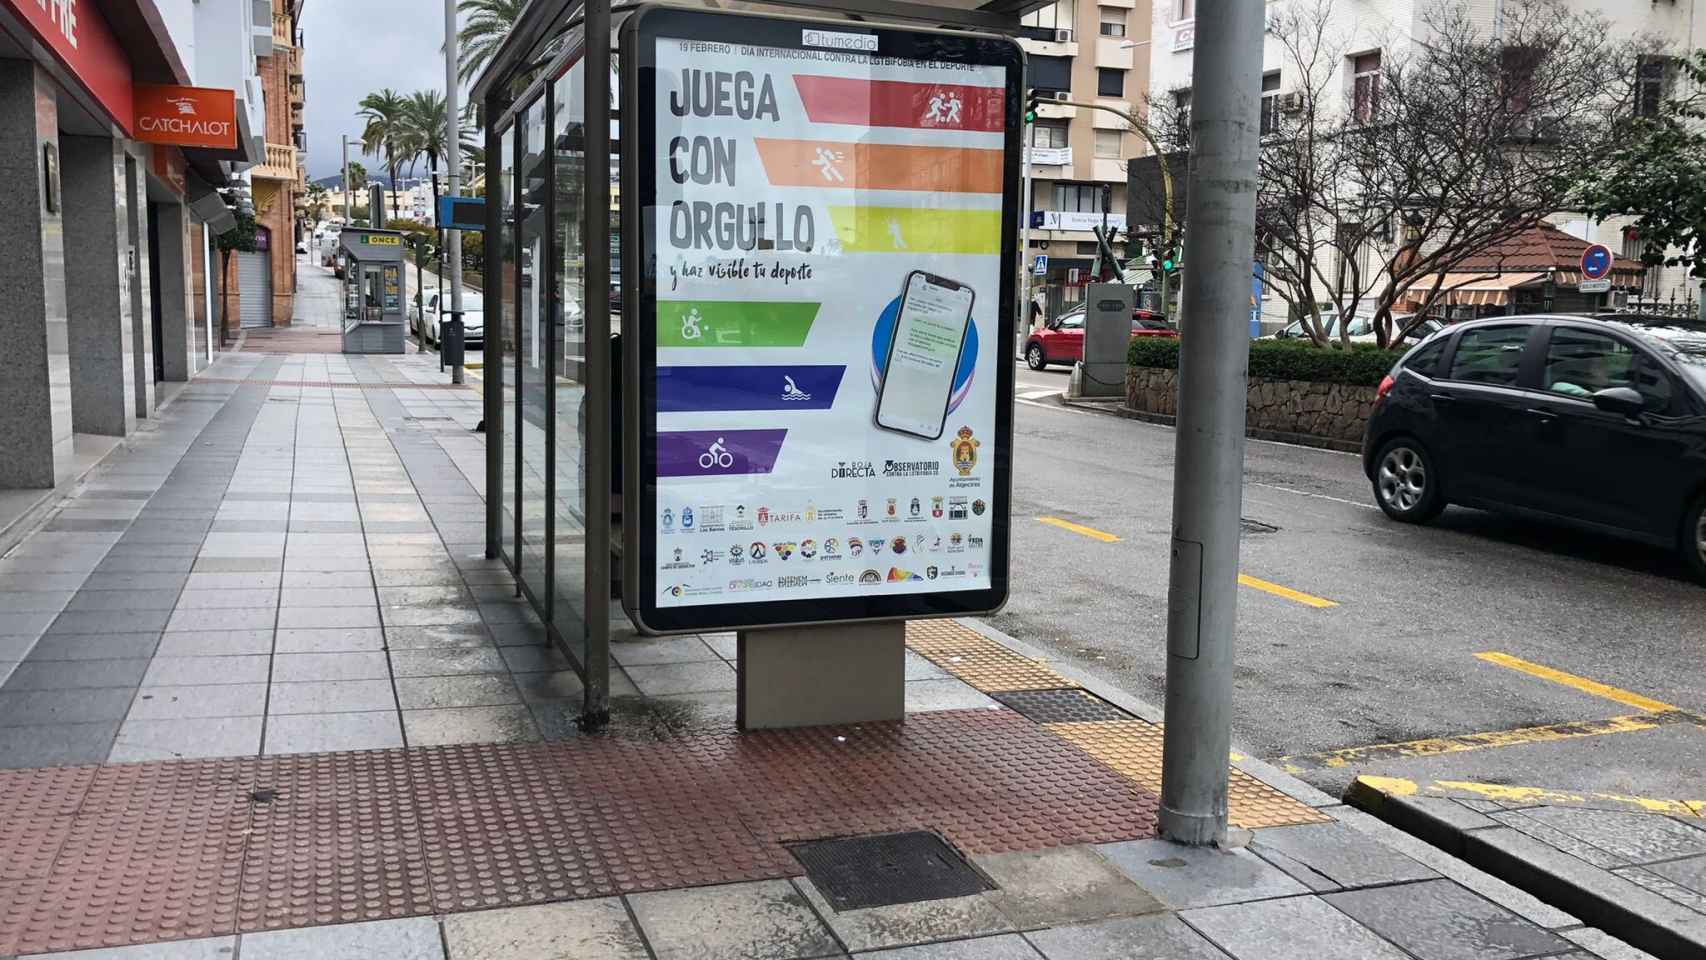 Marquesina de la campaña ‘Juega con Orgullo’ en Algeciras